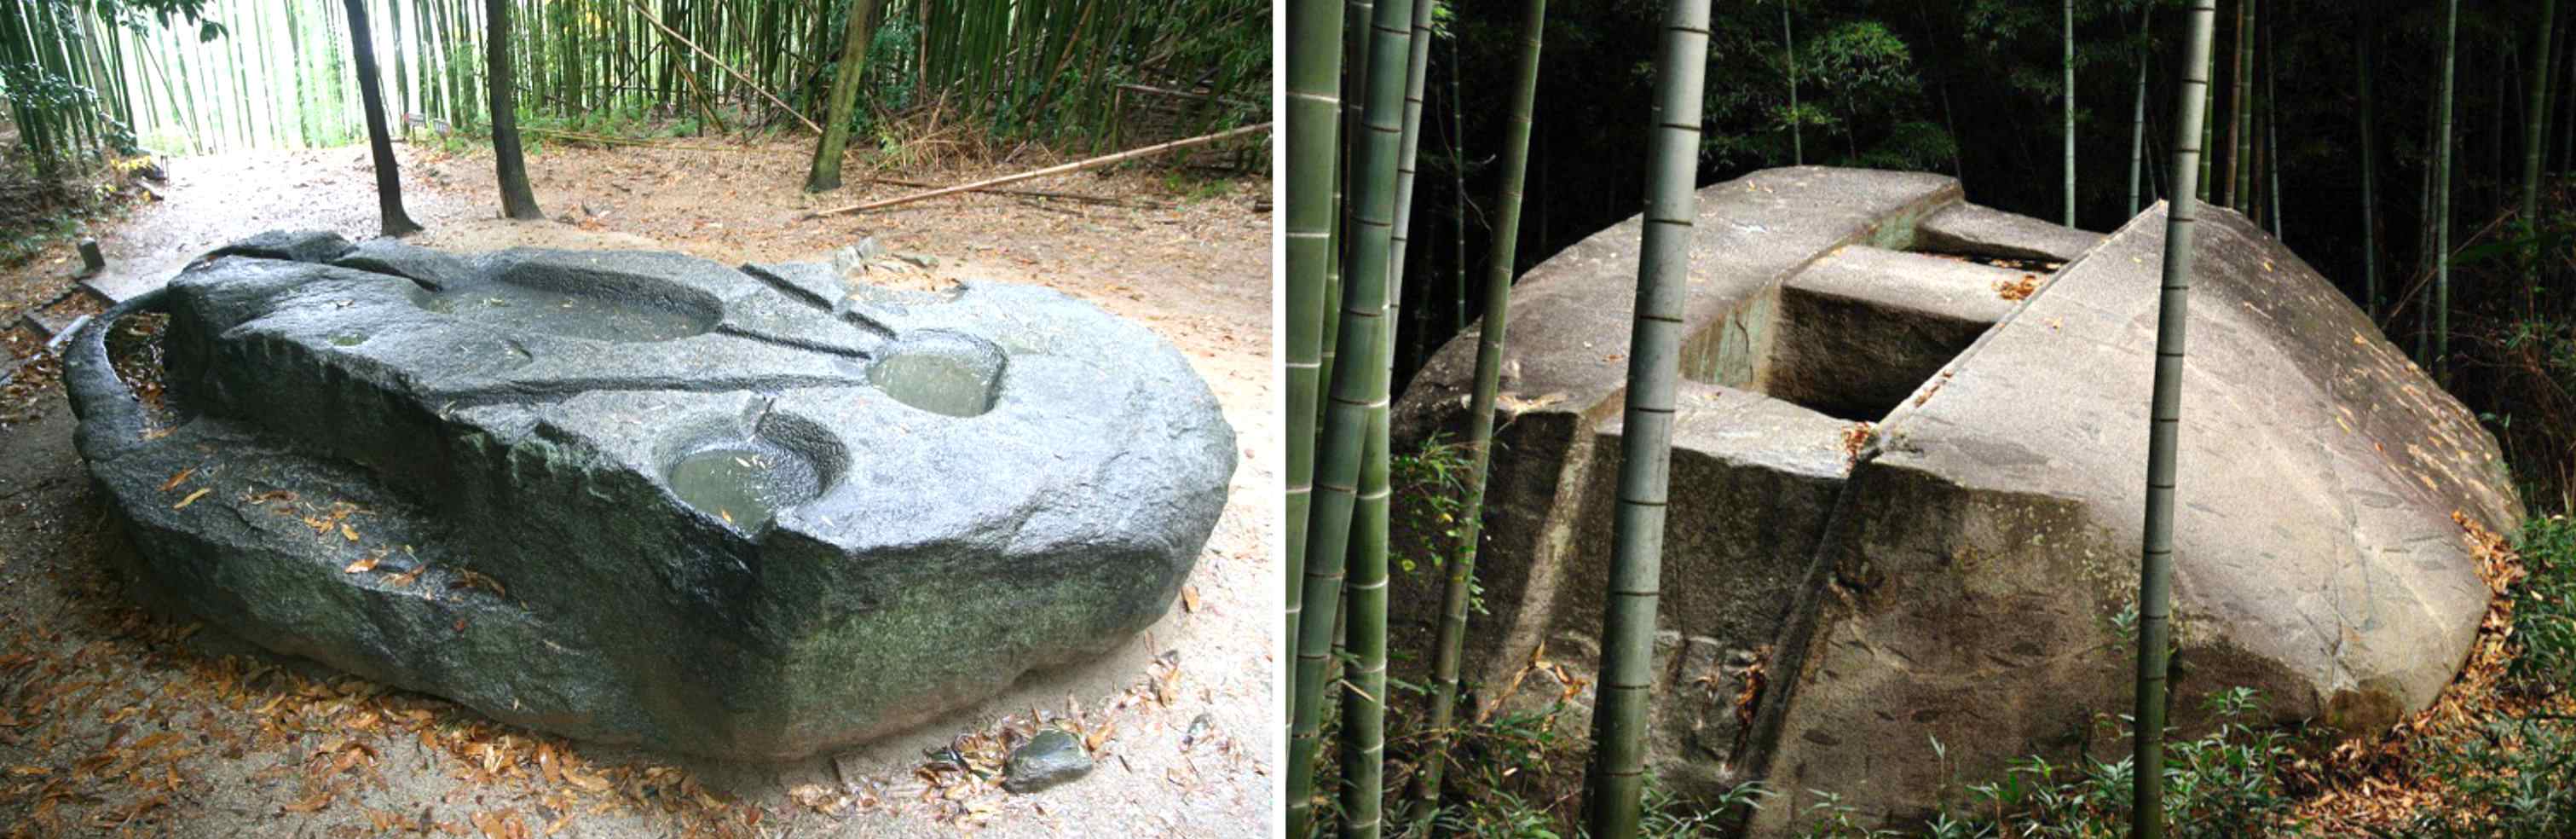 Oude mechanismen: bouwden reuzen deze Japanse megaliet met een gewicht van honderden tonnen? 3